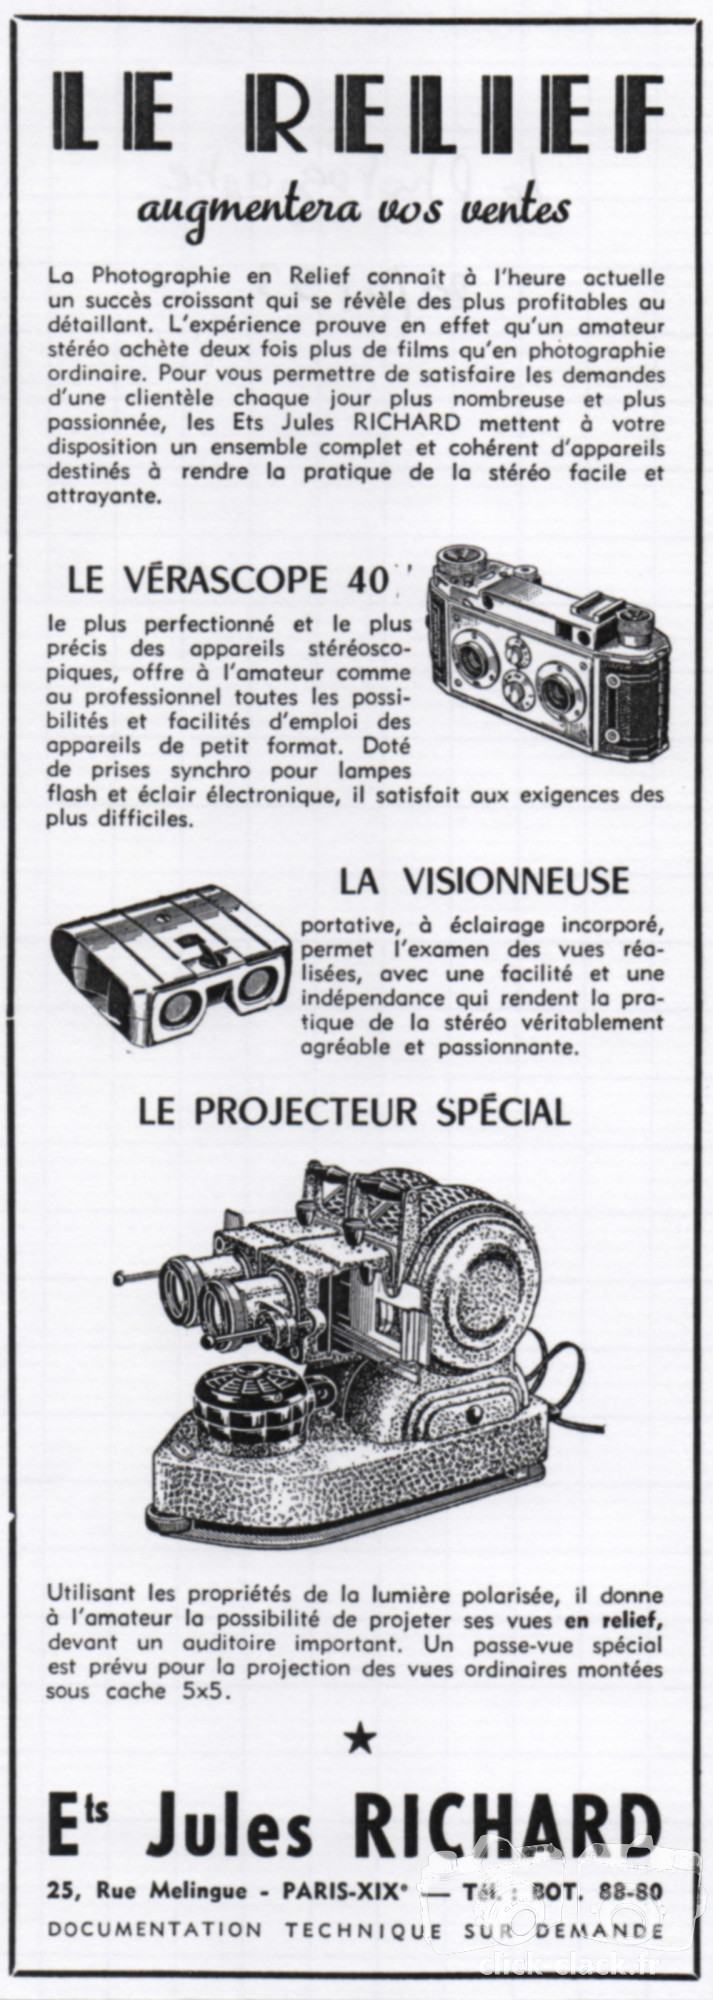 Richard - Vérascope F40, visionneuse, projecteur - 20 avril 1953 - Le Photographe